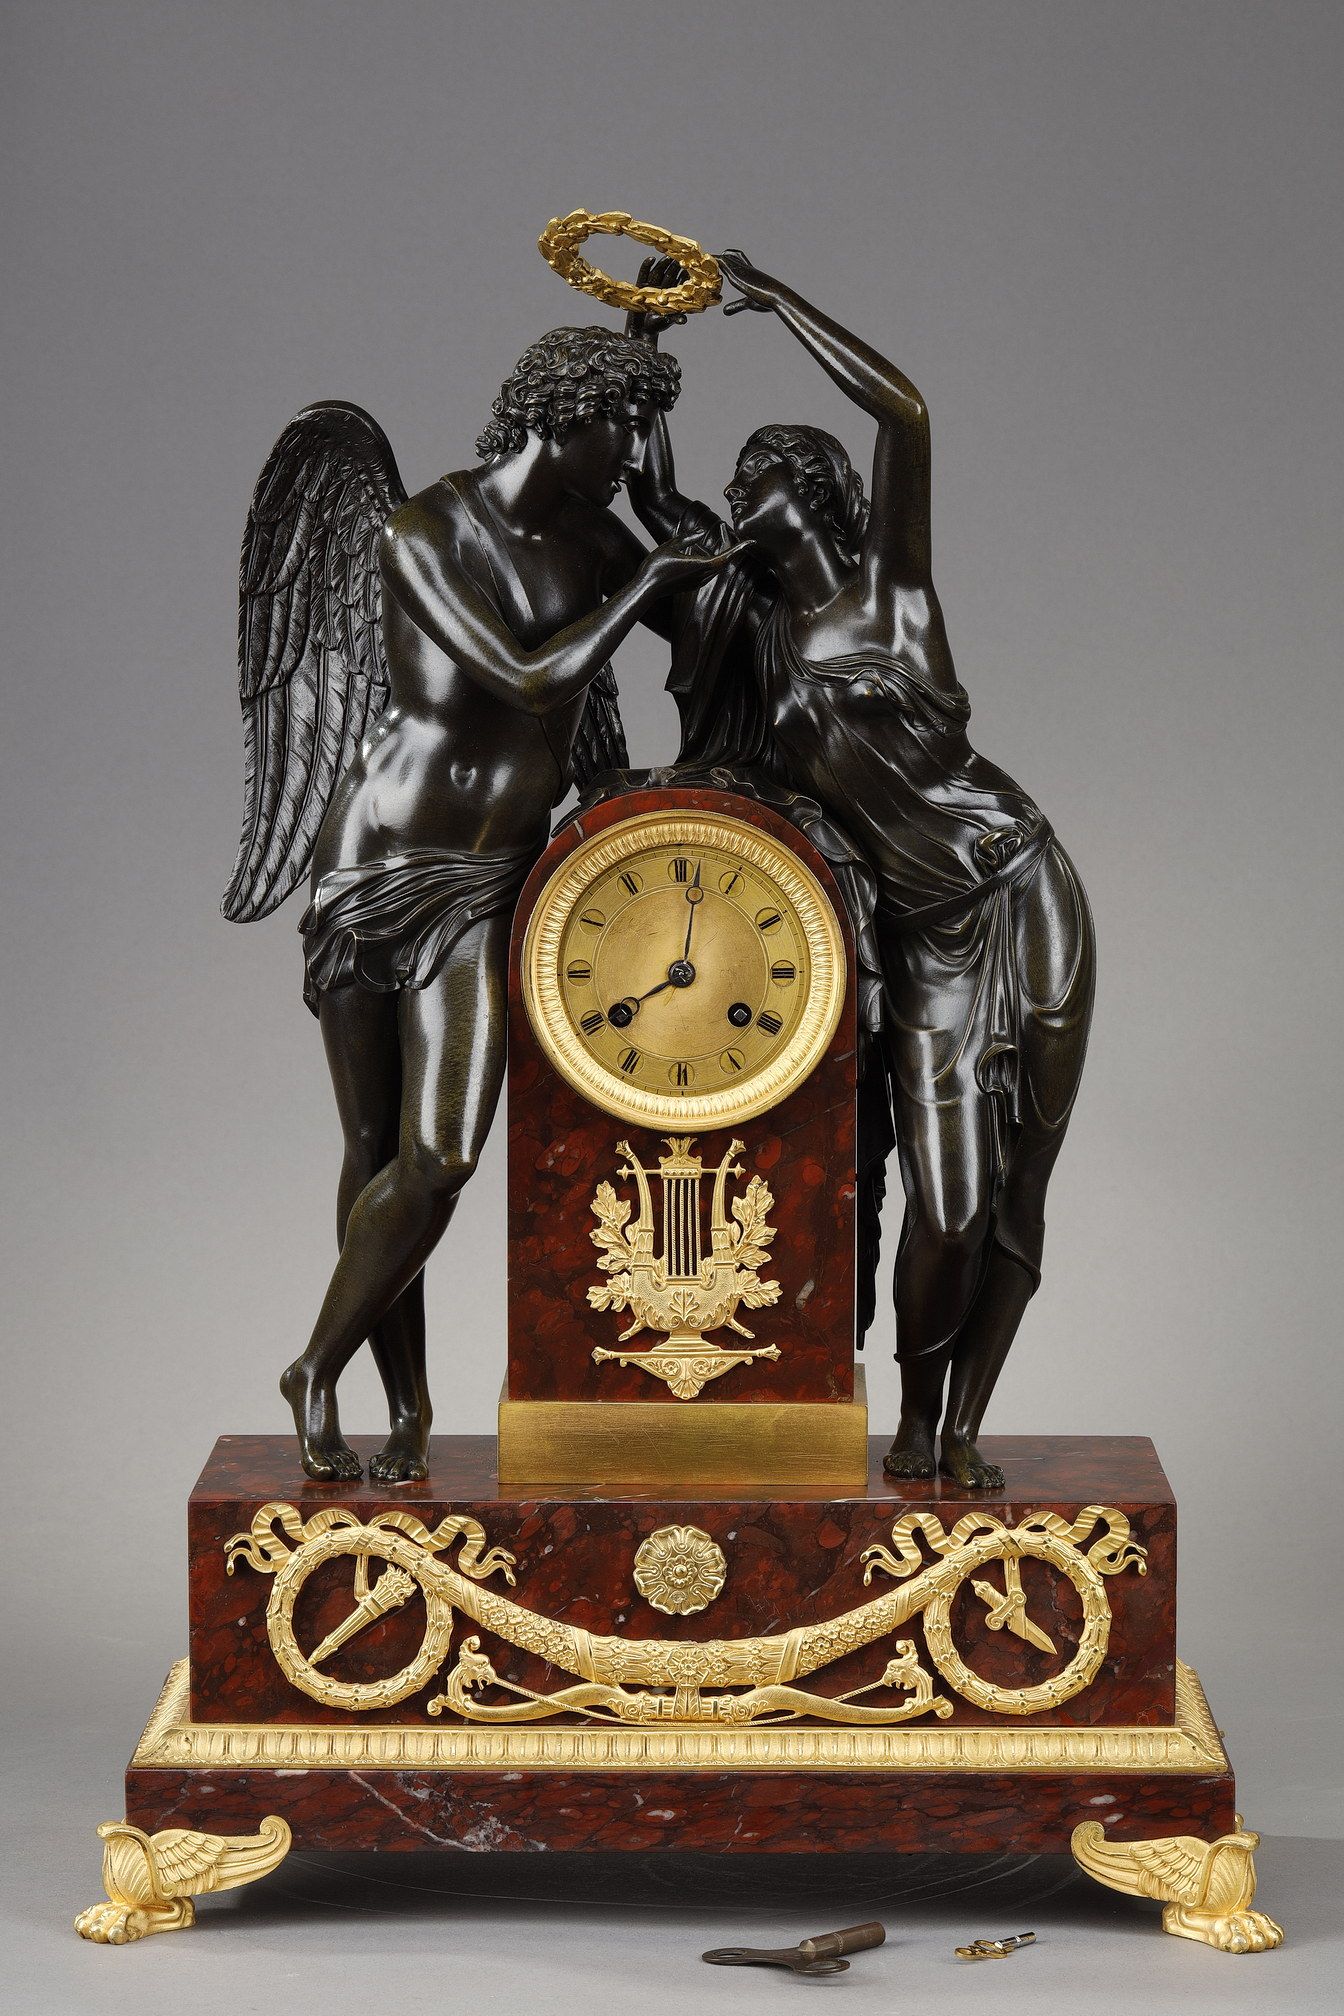 Amour et Psyché clock after Claude MICHALLON